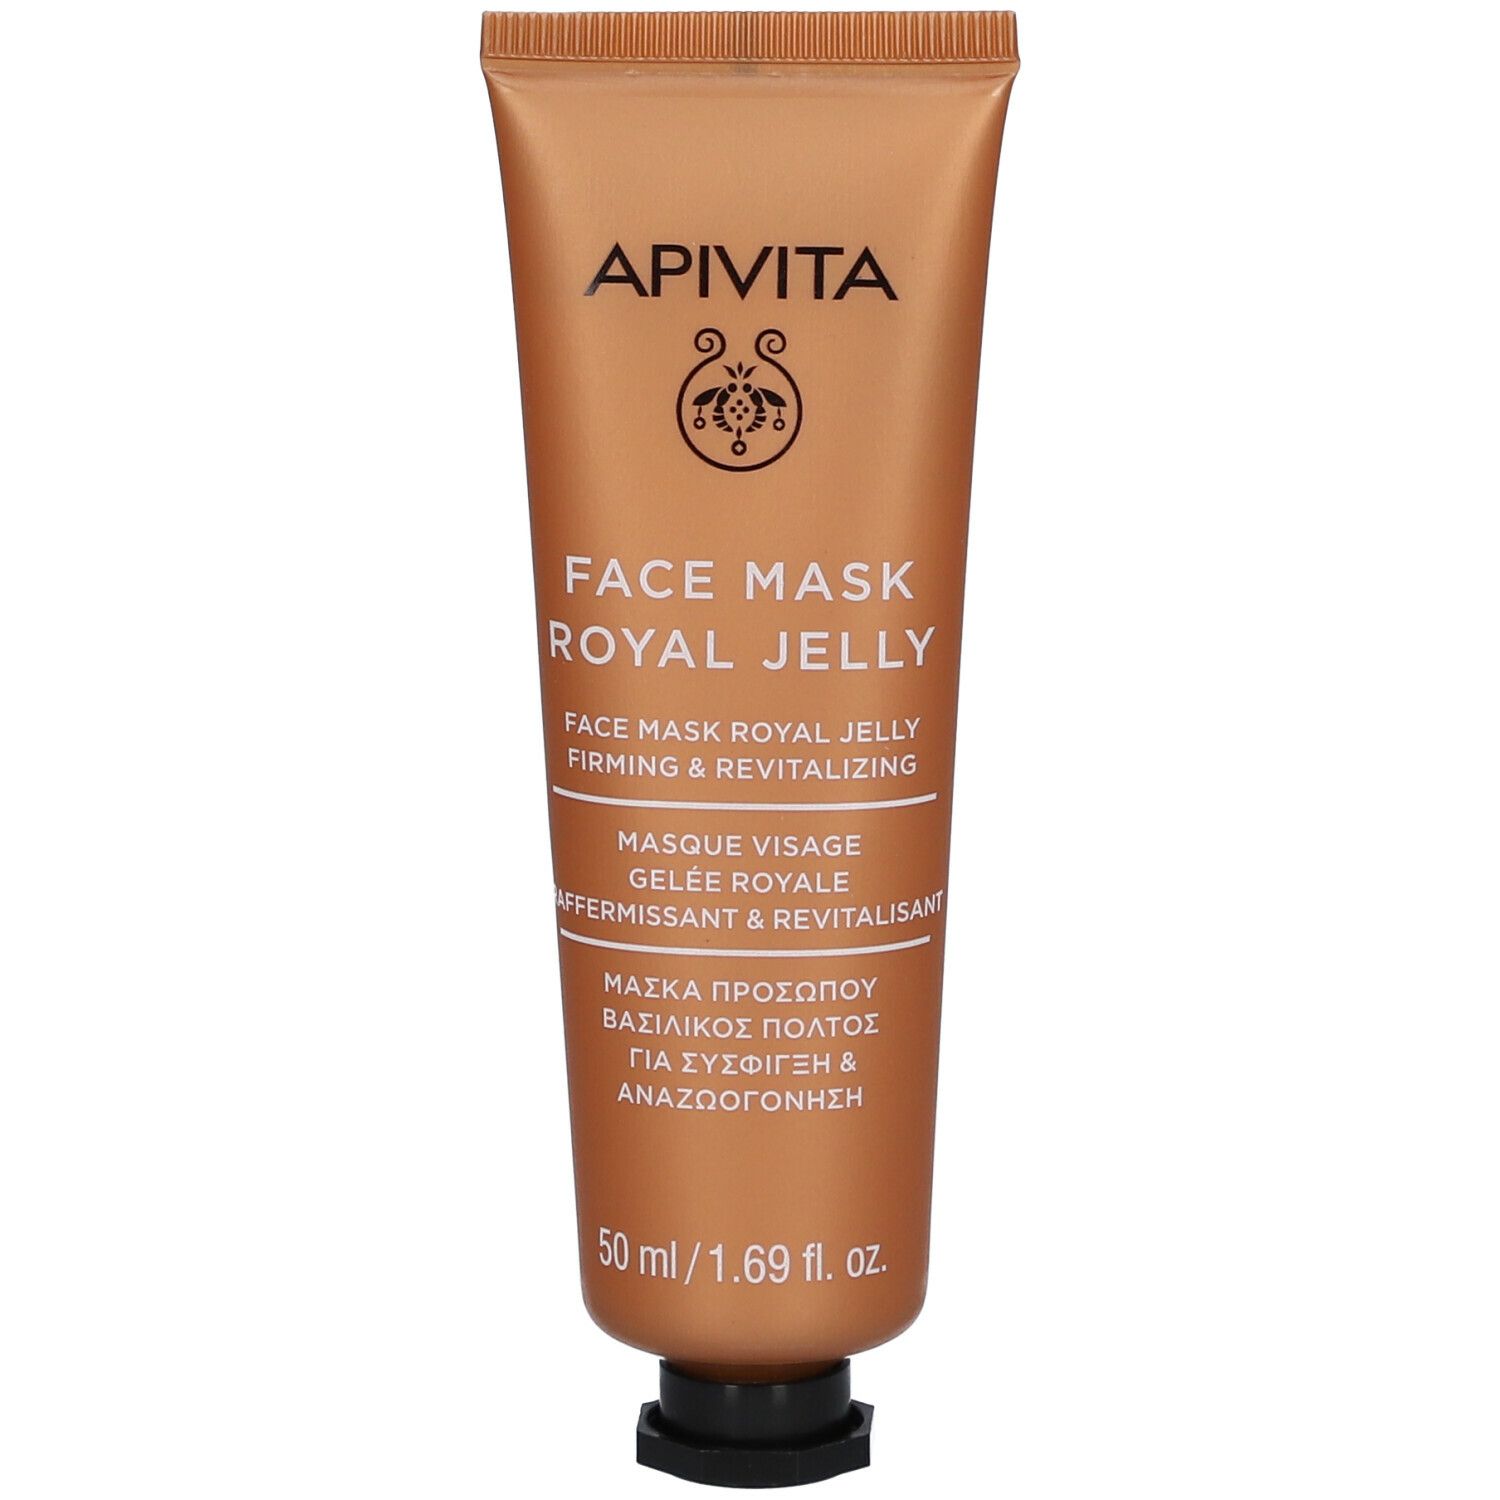 Apivita Express Beauty Masque Visage Raffermissant & Revitalisant à la Gelée Royale